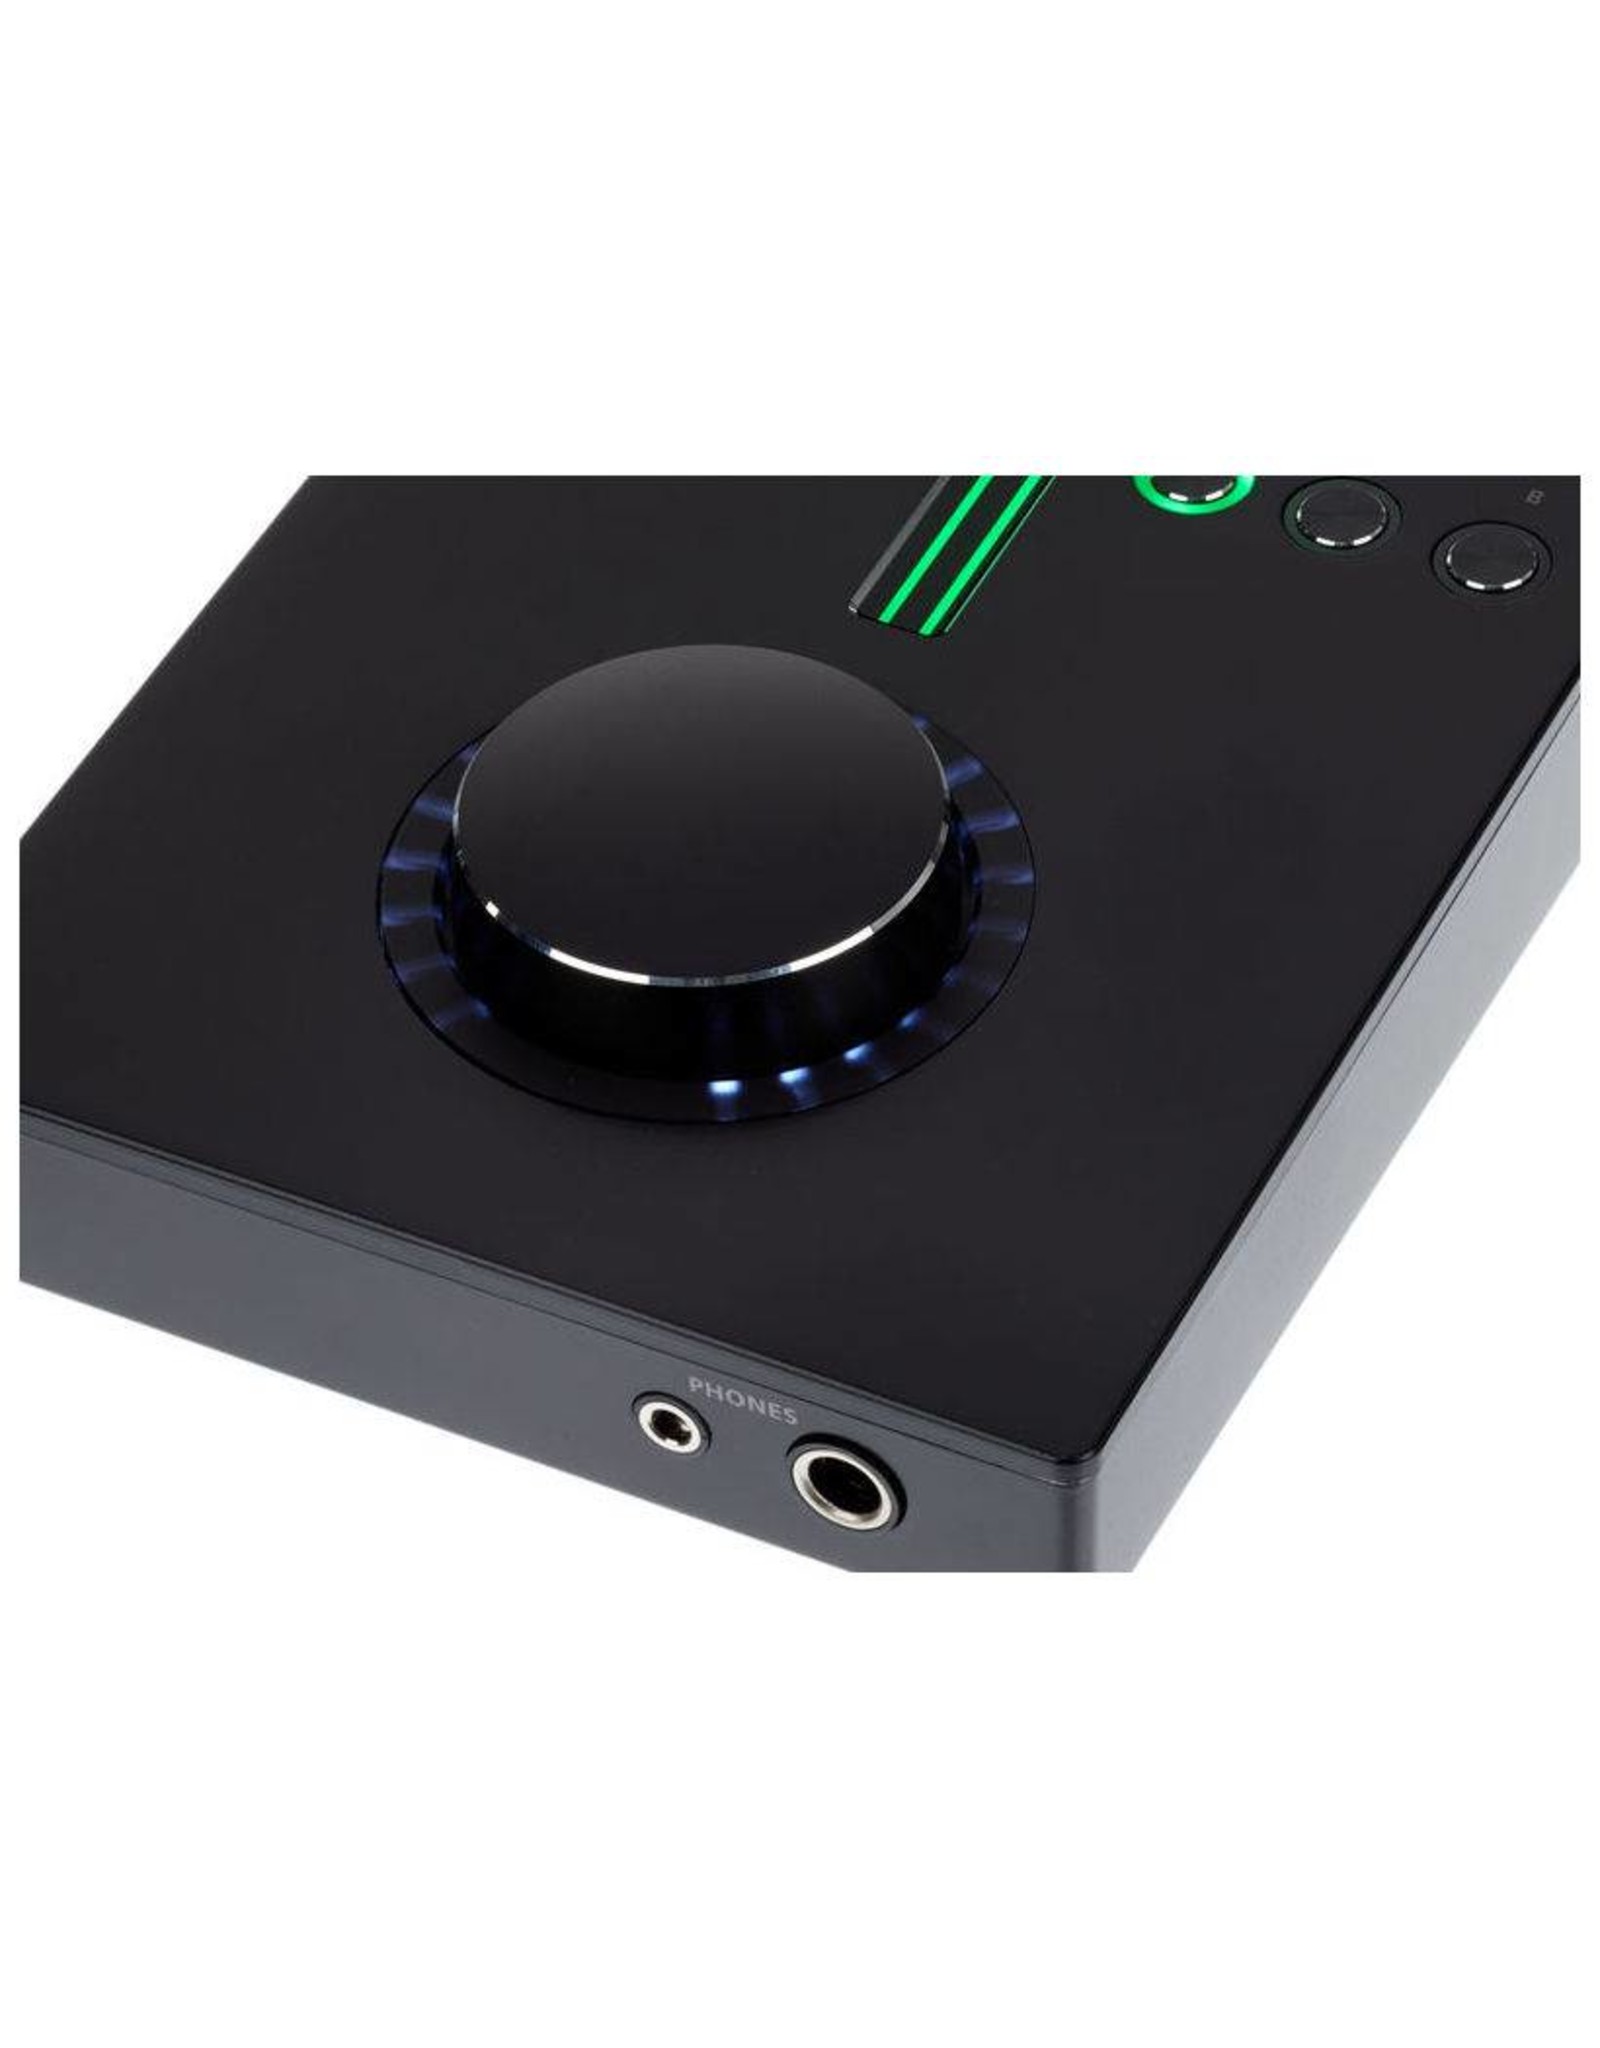 Roland  UA-S10-Audio-Schnittstelle für PC & Mac hervorragende Audioqualität